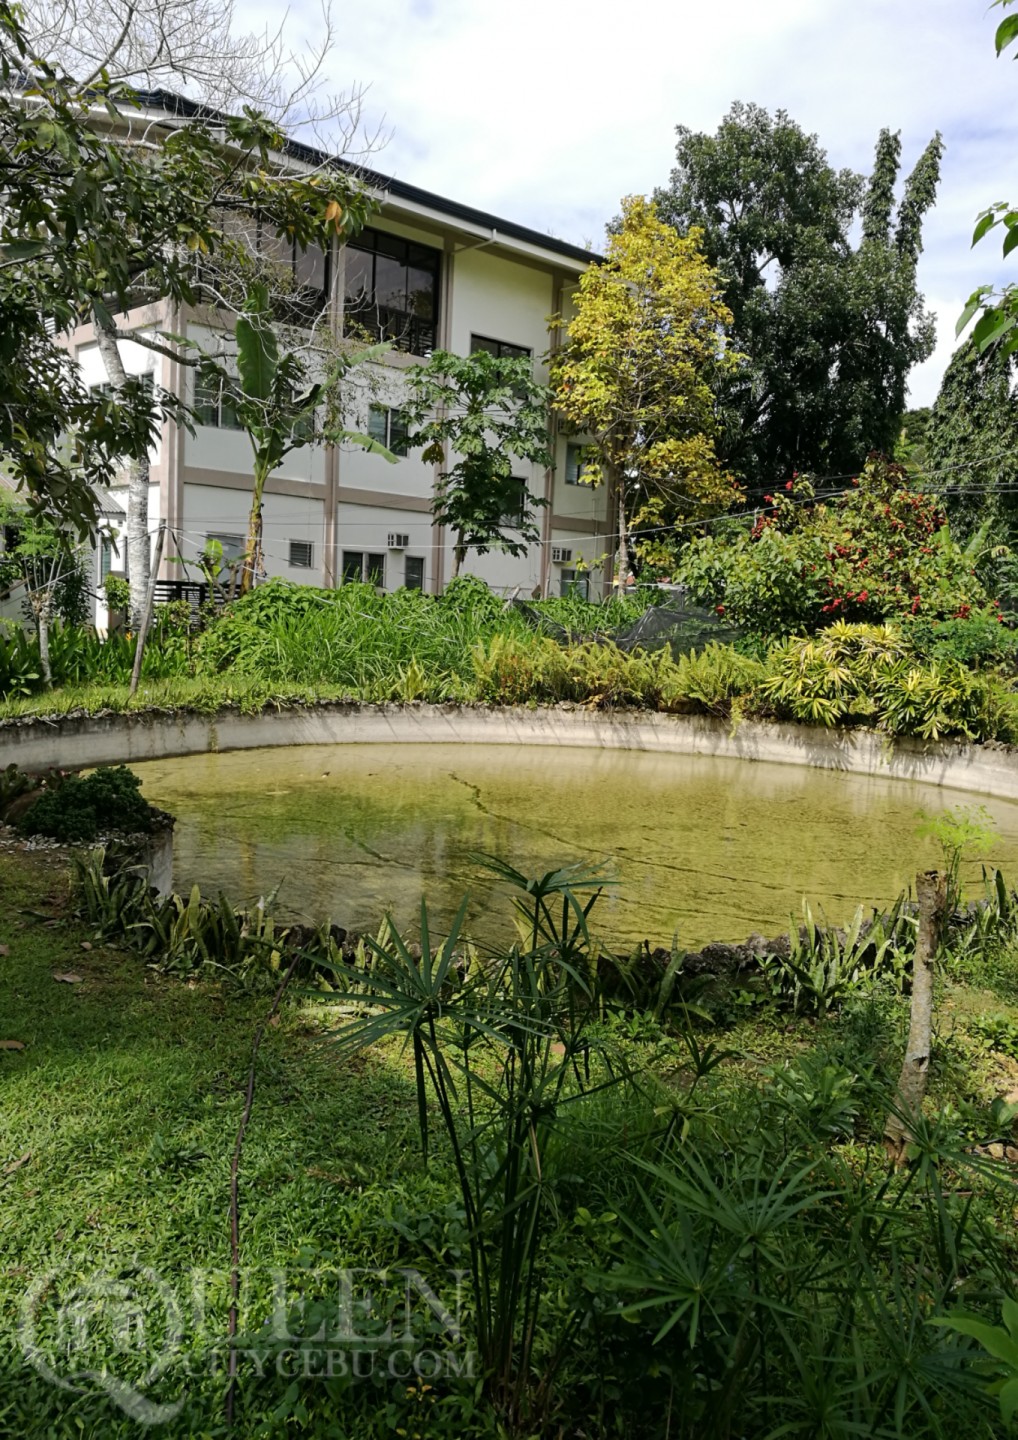 Their pond at Farmhouse in Aloguinsan 